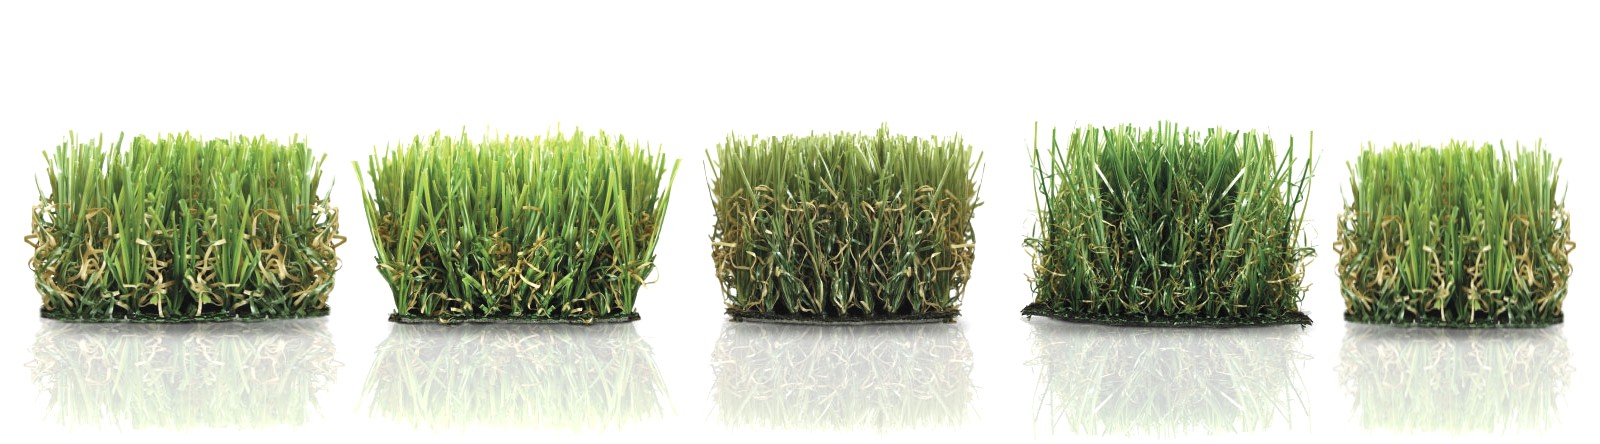 tappeto erboso sintetico erba sintetica per esterno erba artificiale per giardino sintetico per esterno